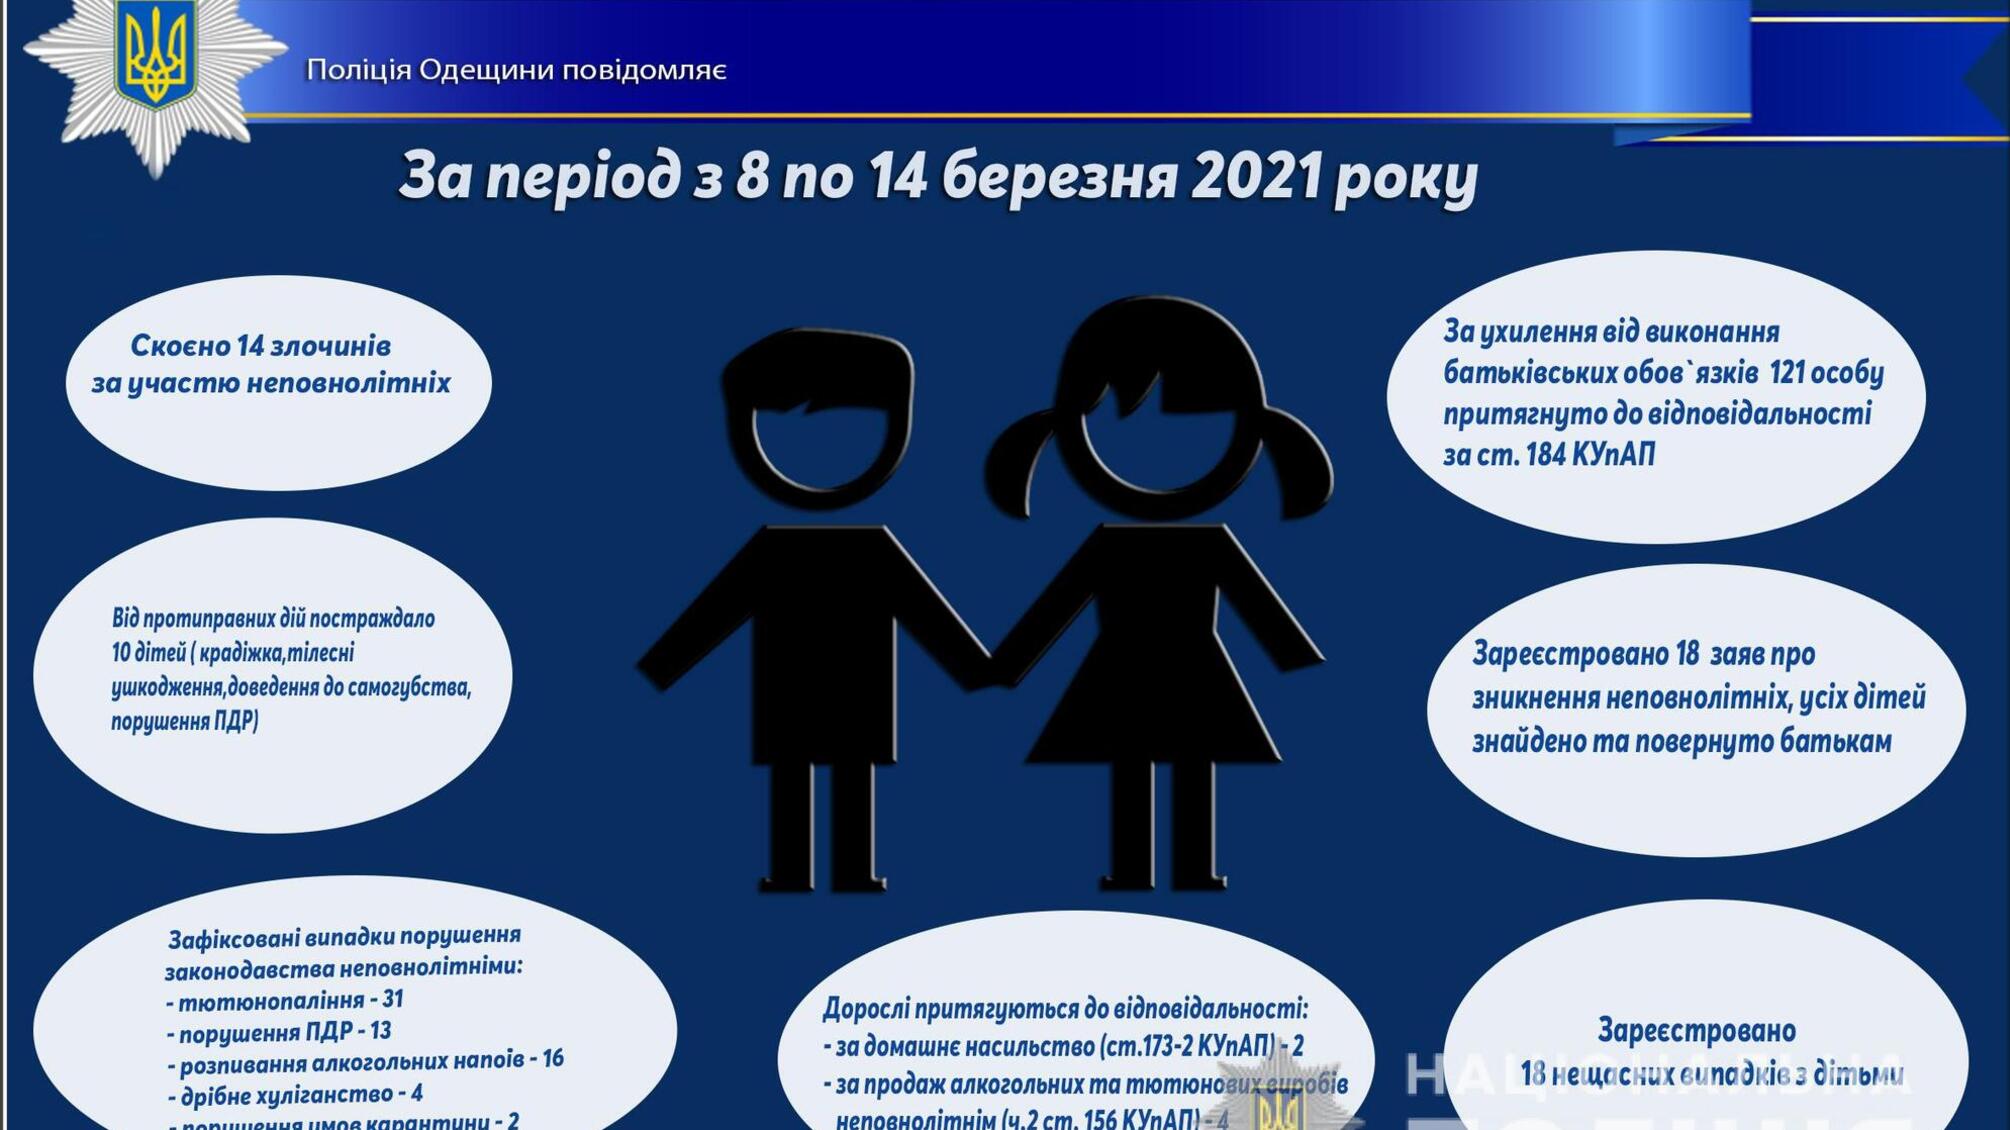 Про стан роботи поліції Одещини з протидії порушенням законодавства неповнолітніми та відносно них за період з 8 по 14 березня 2021 року